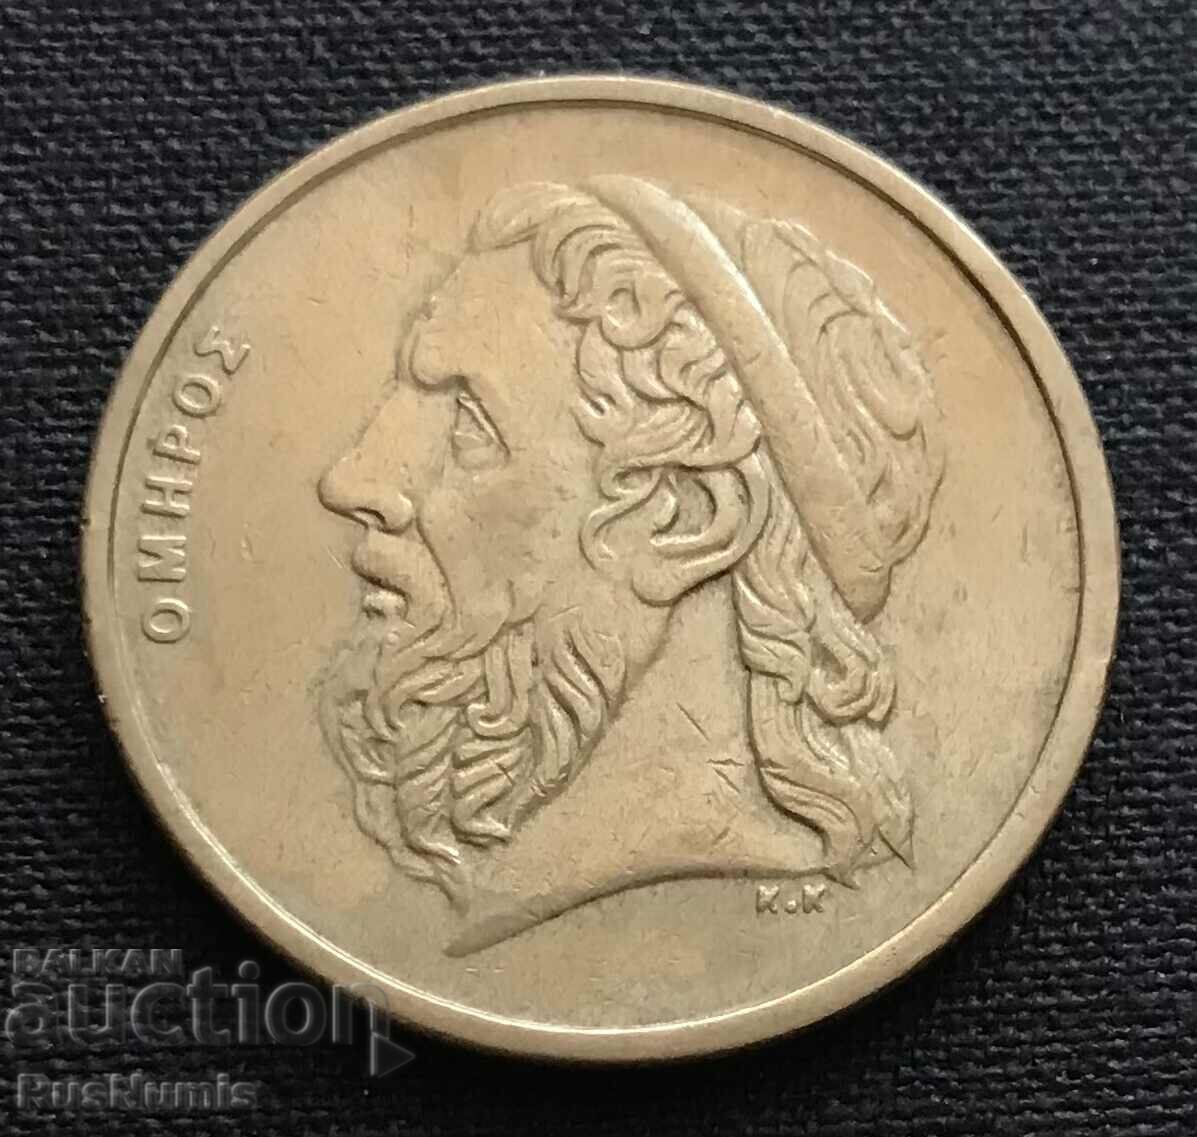 Greece. 50 drachmas 1988